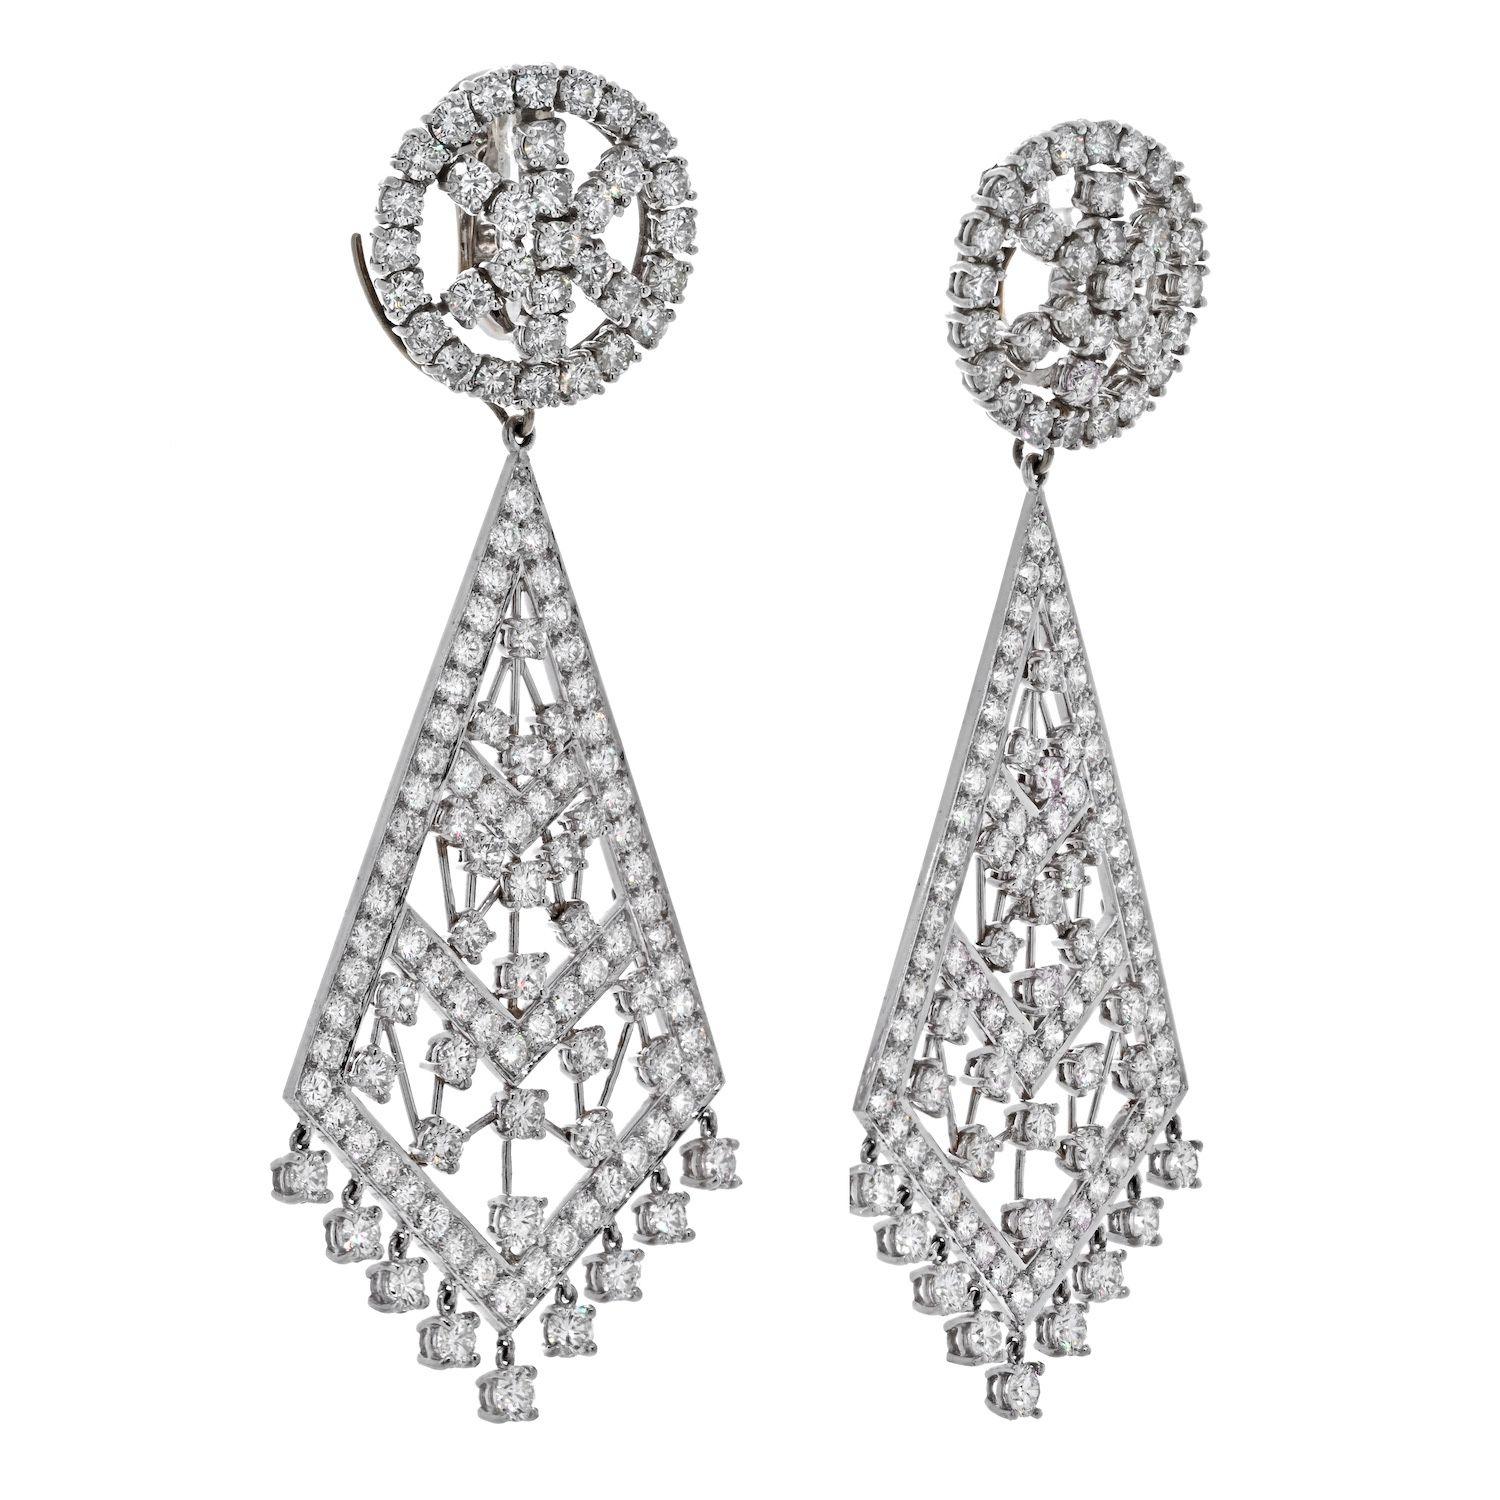 Impressionnantes boucles d'oreilles chandelier en diamant de David Webb, réalisées en platine et montées de diamants ronds de 36,00cttw (poids total). Ces boucles d'oreilles exceptionnelles peuvent être portées de jour comme de nuit, la partie